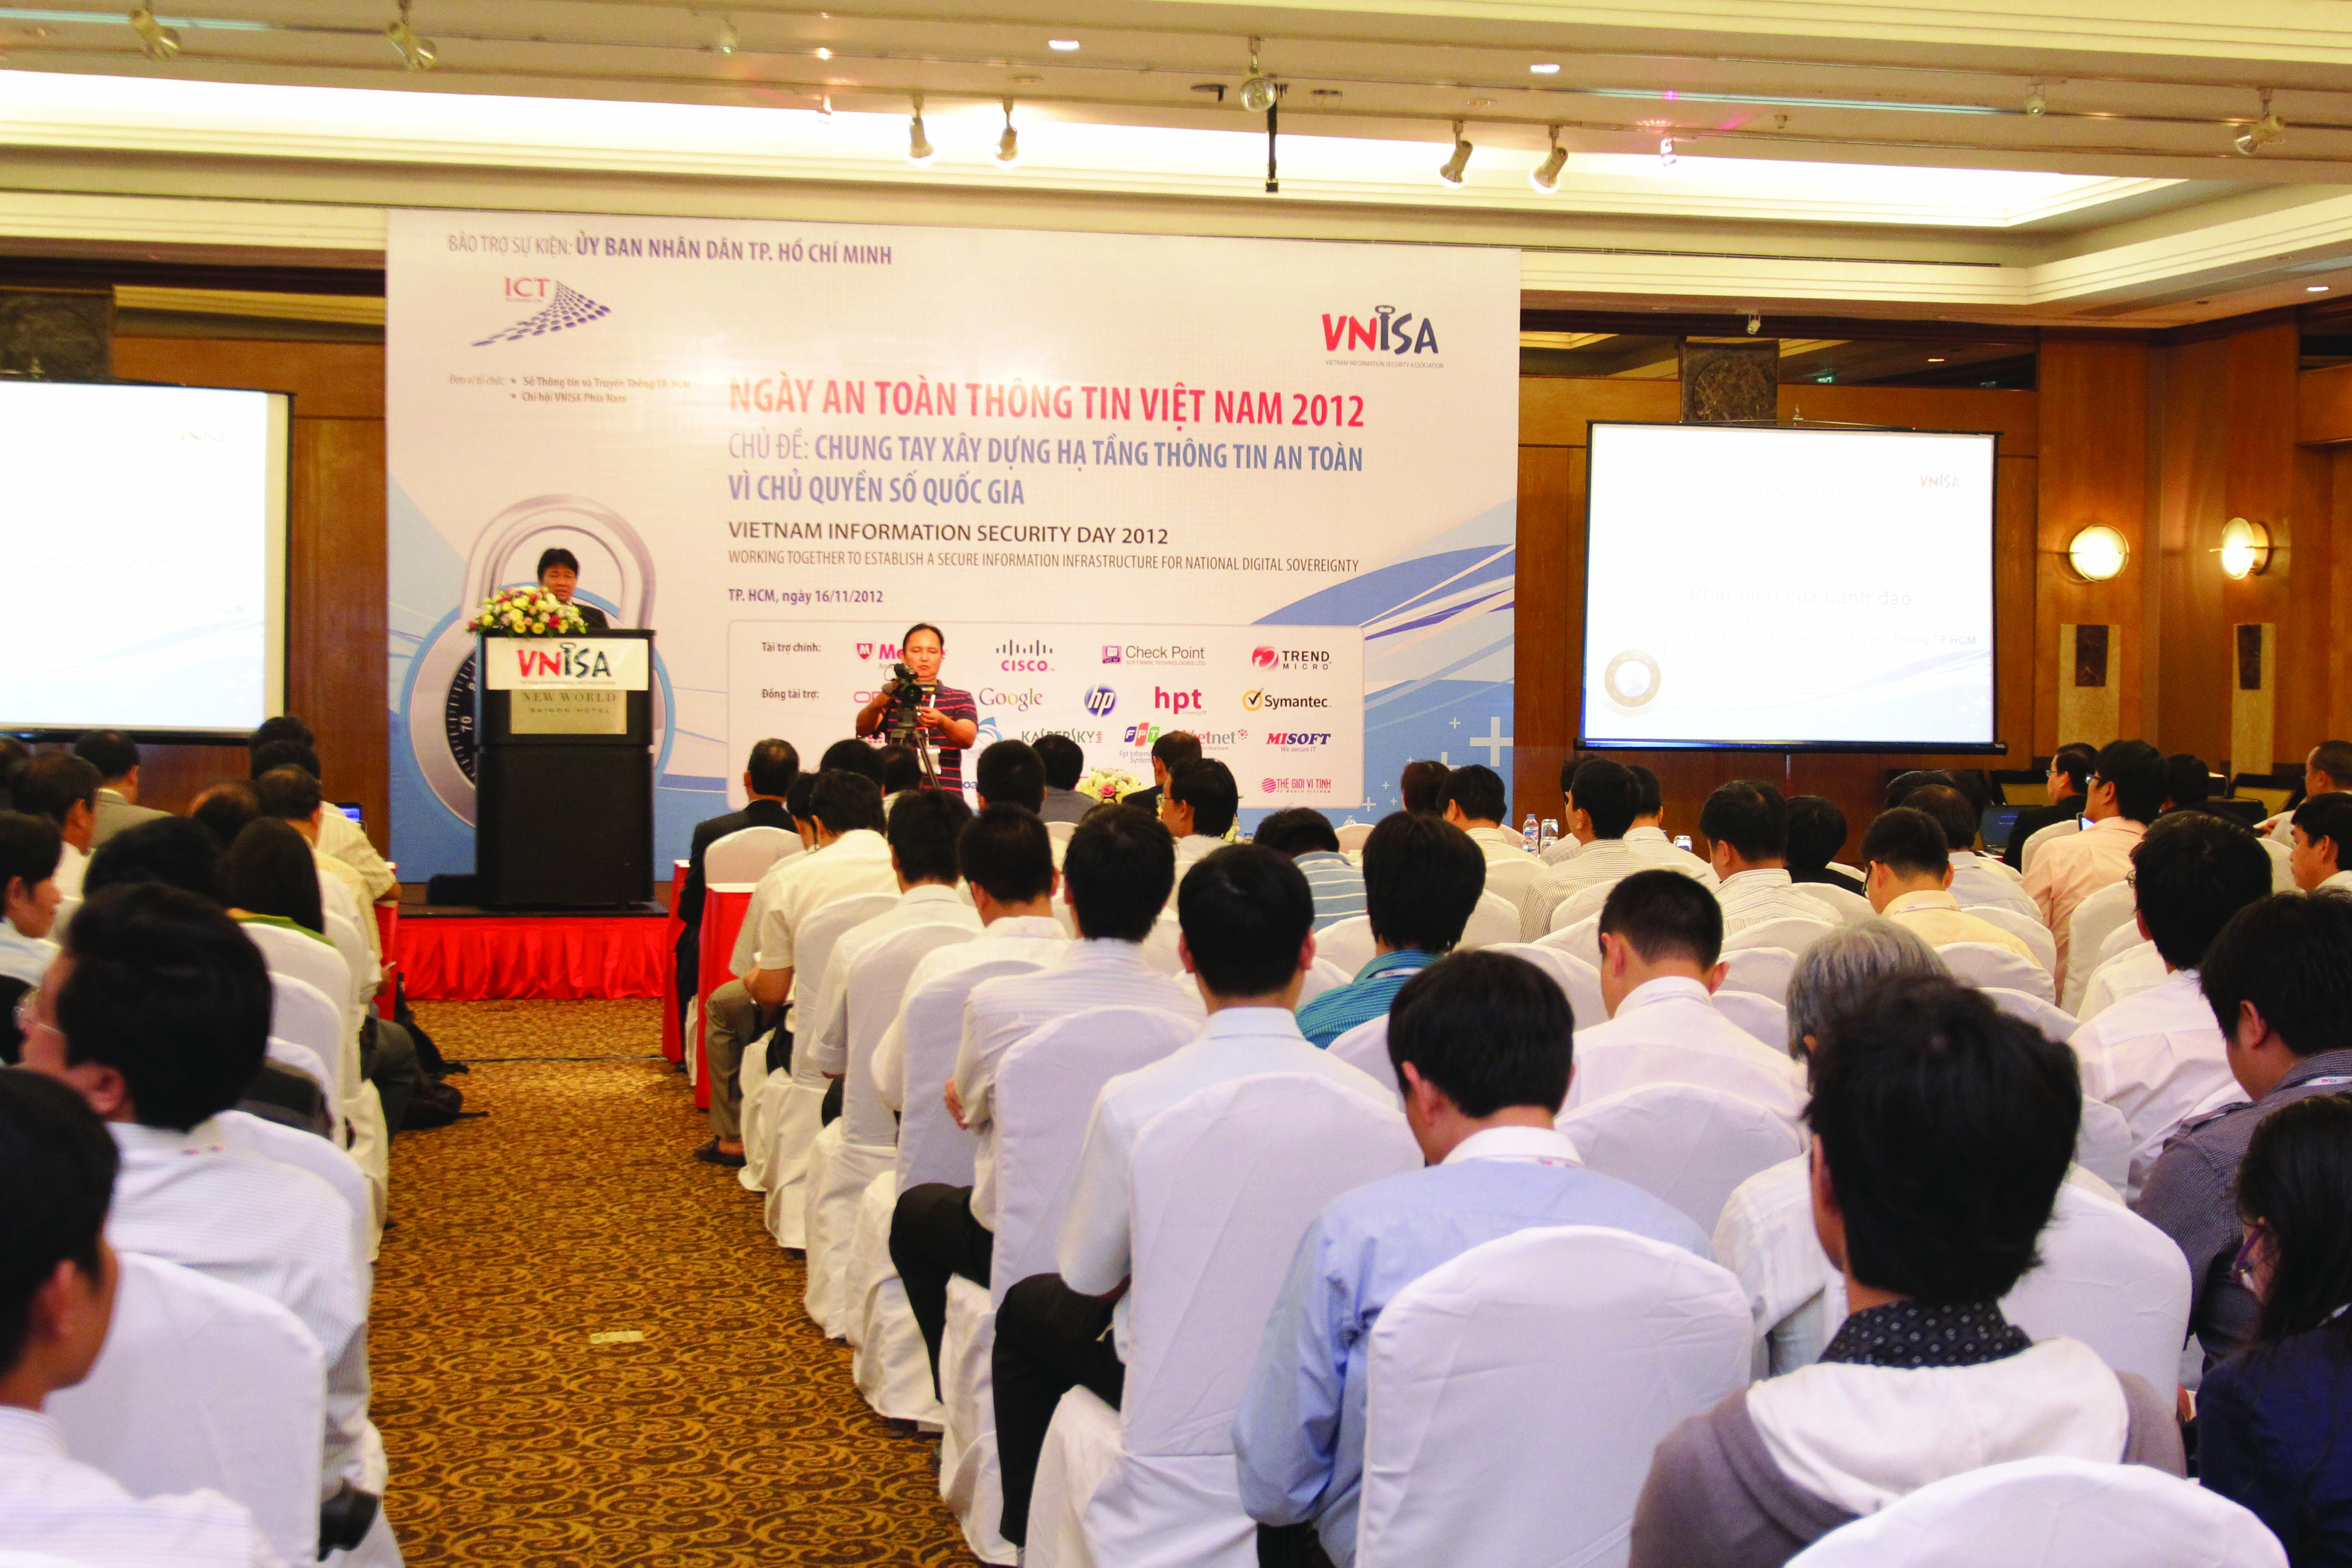 Các đại biểu dự Hội thảo Ngày An toàn thông tin Việt Nam 2012 tại TP Hồ Chí Minh